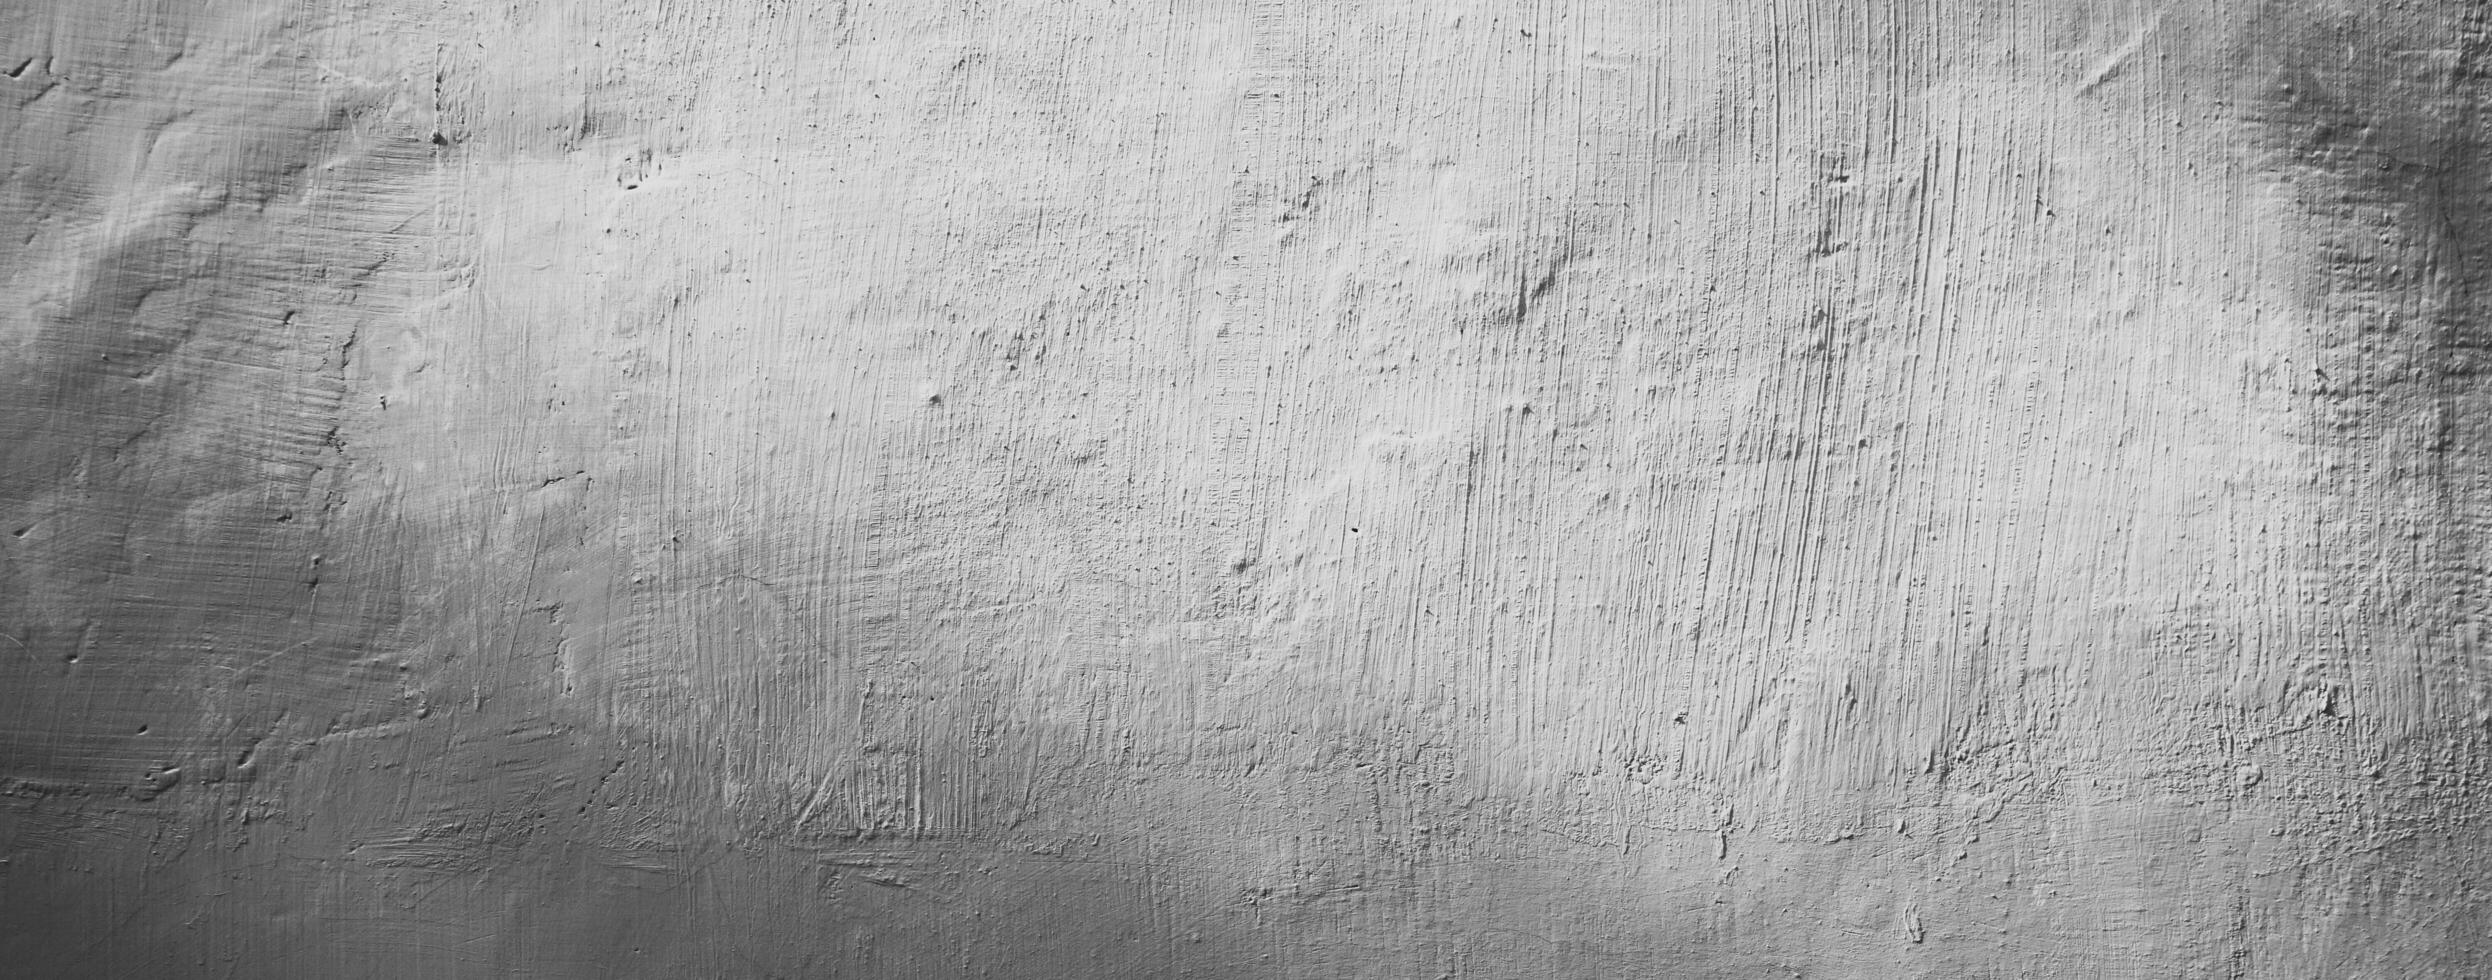 fundo de textura de parede branca abstrata foto